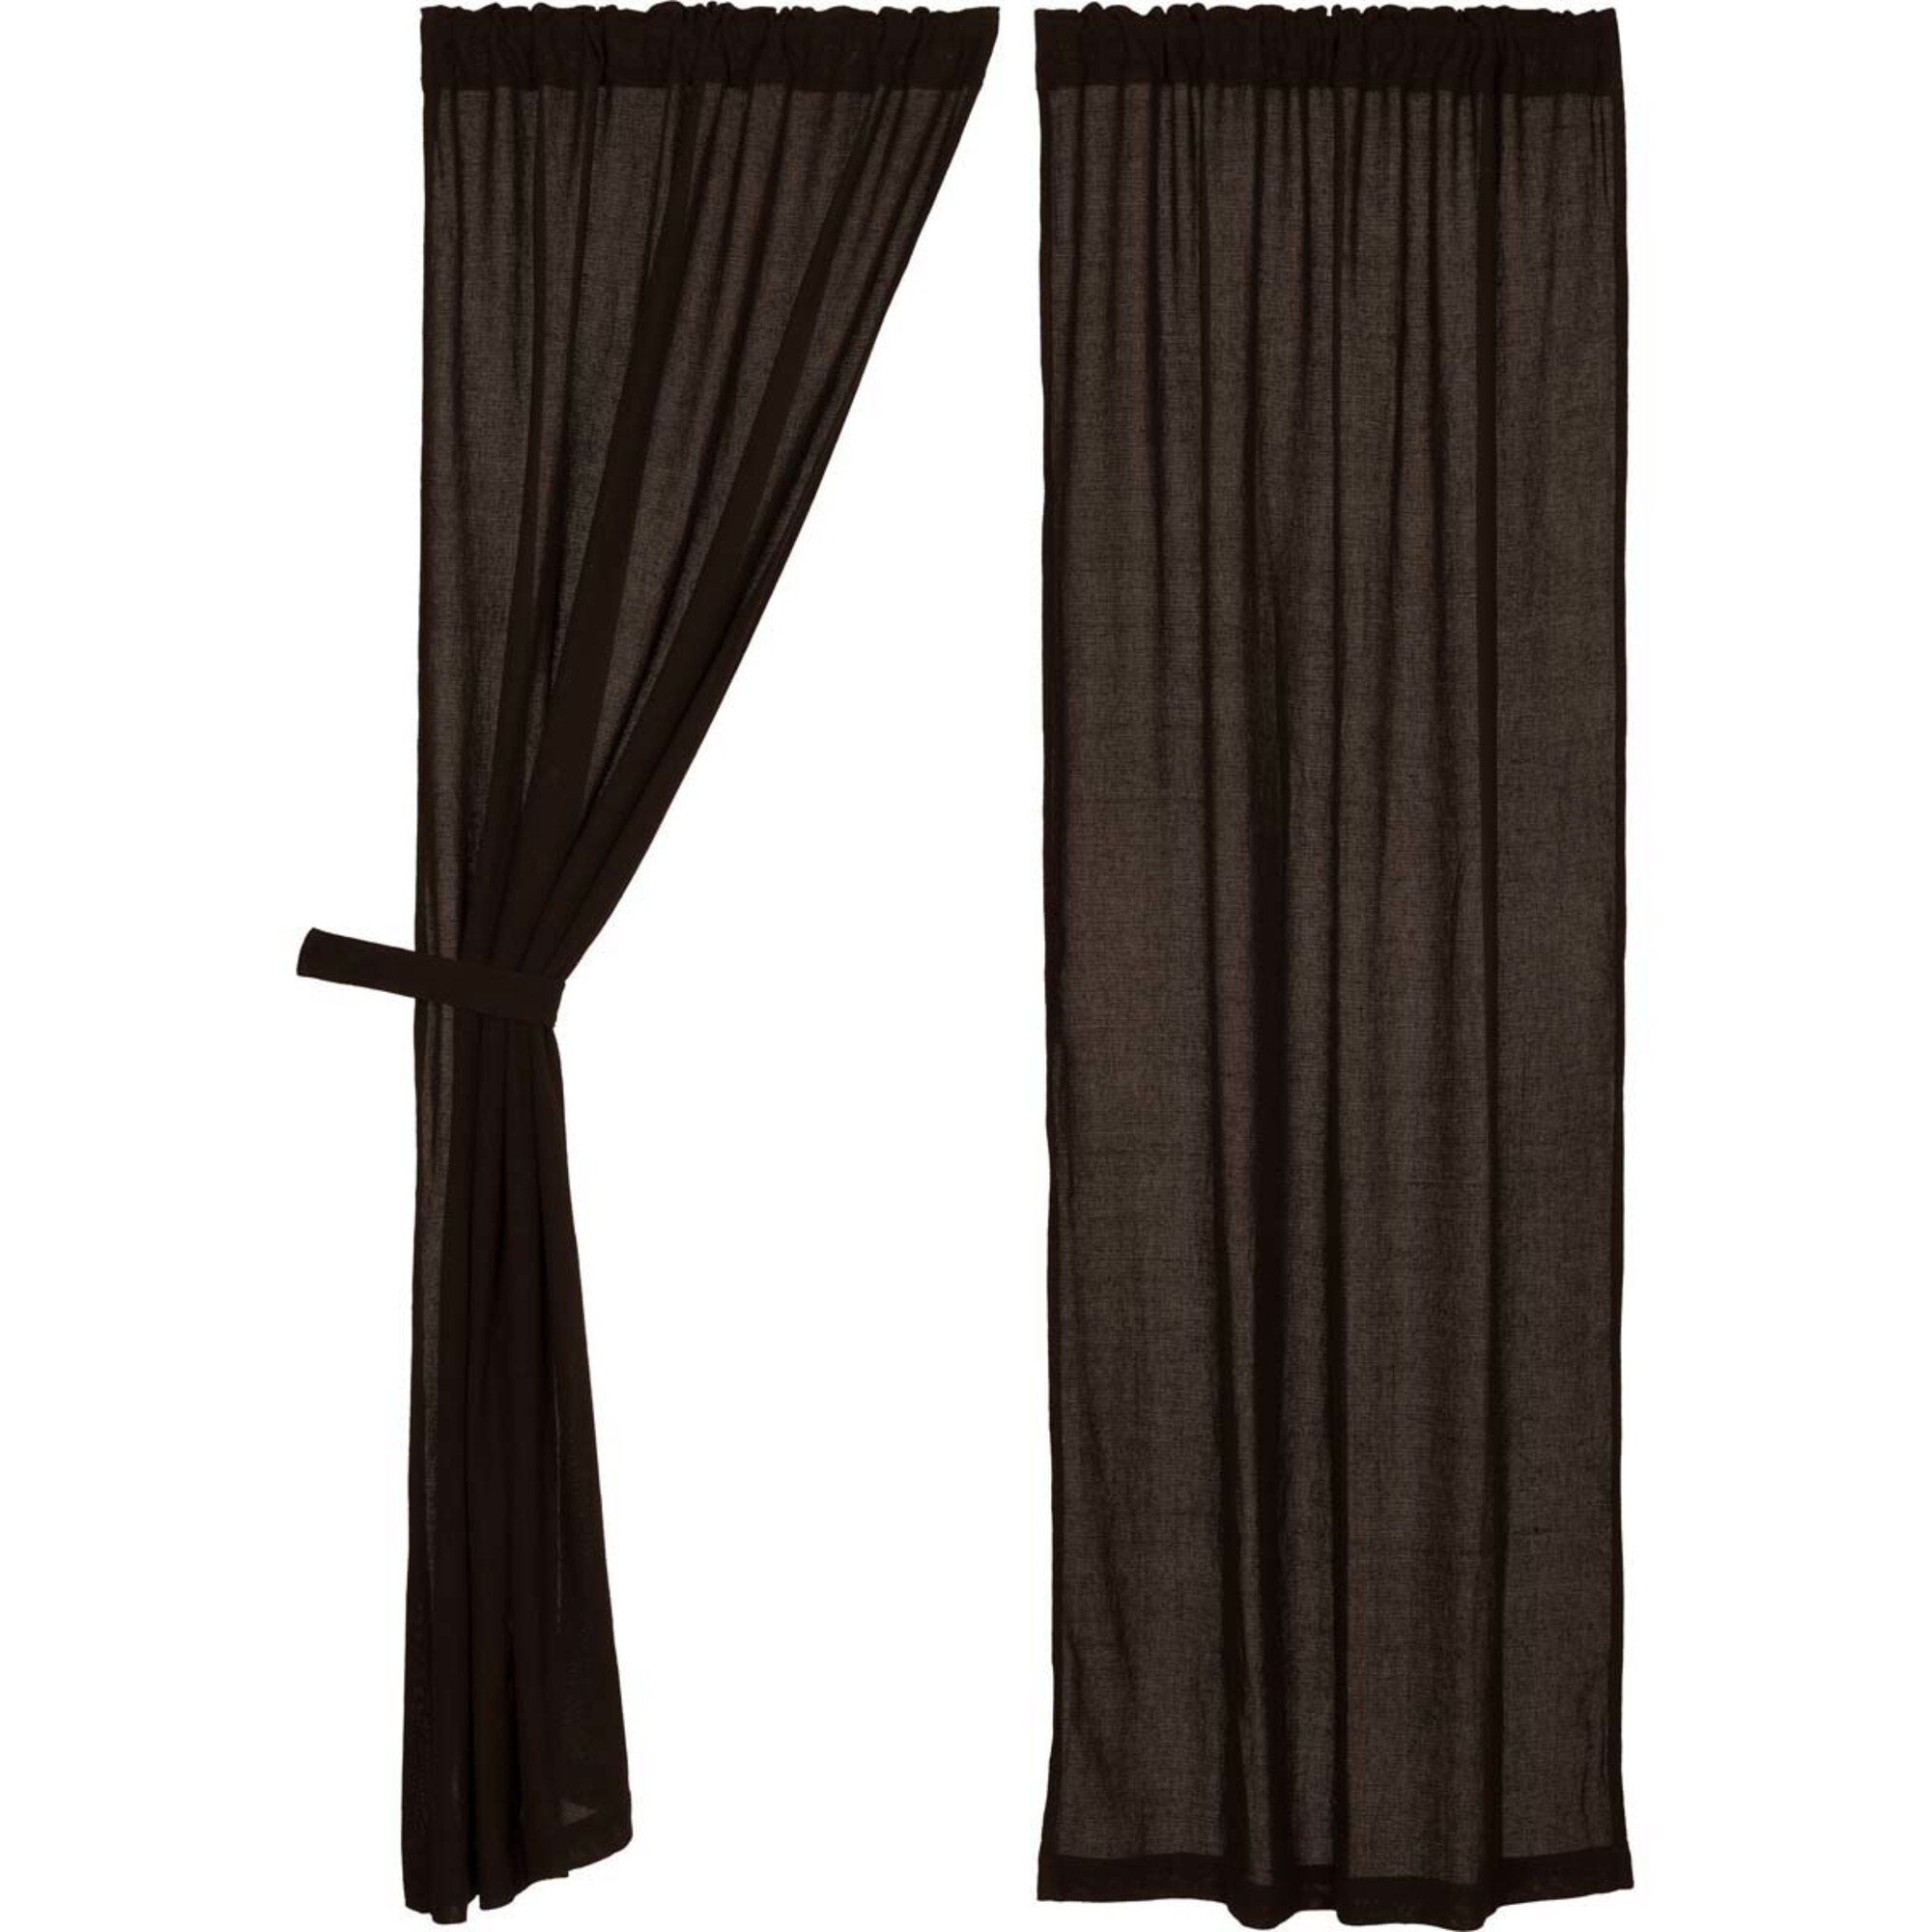 VHC Brands Burlap Natural Curtain Tan Panel Set 84x40 